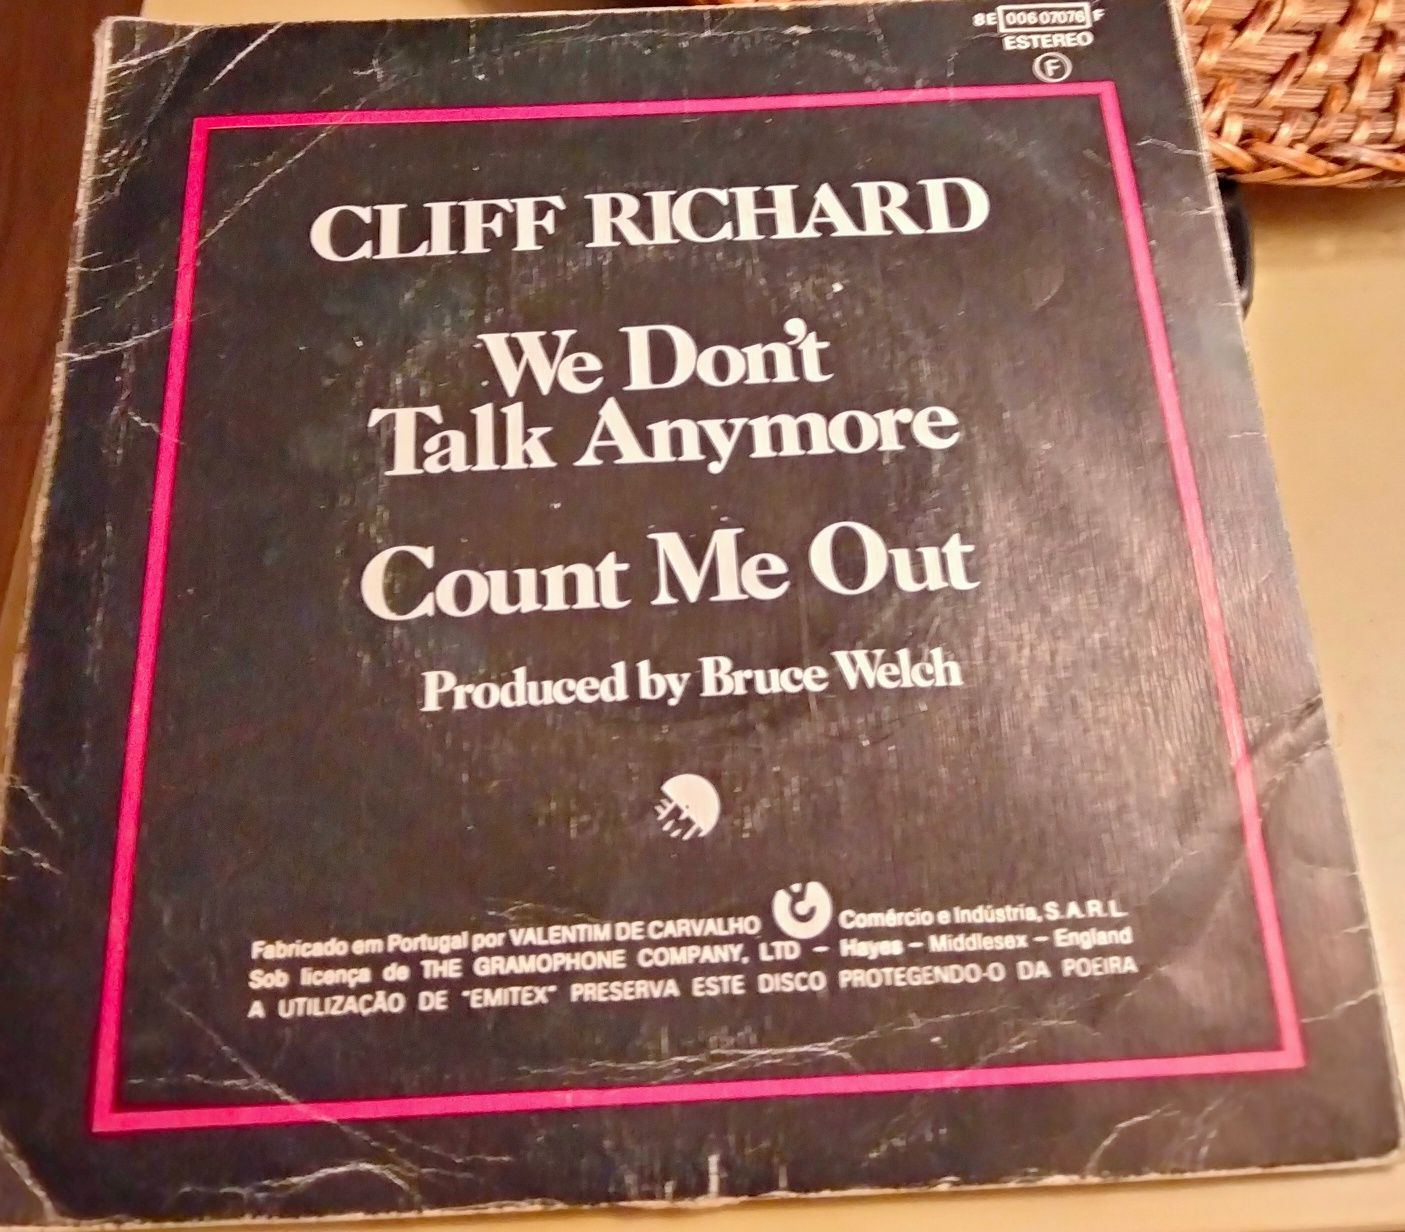 REDUÇÃO DE PREÇO - Coleção vinilLados A/B, Cliff Richard 1978 We Don't